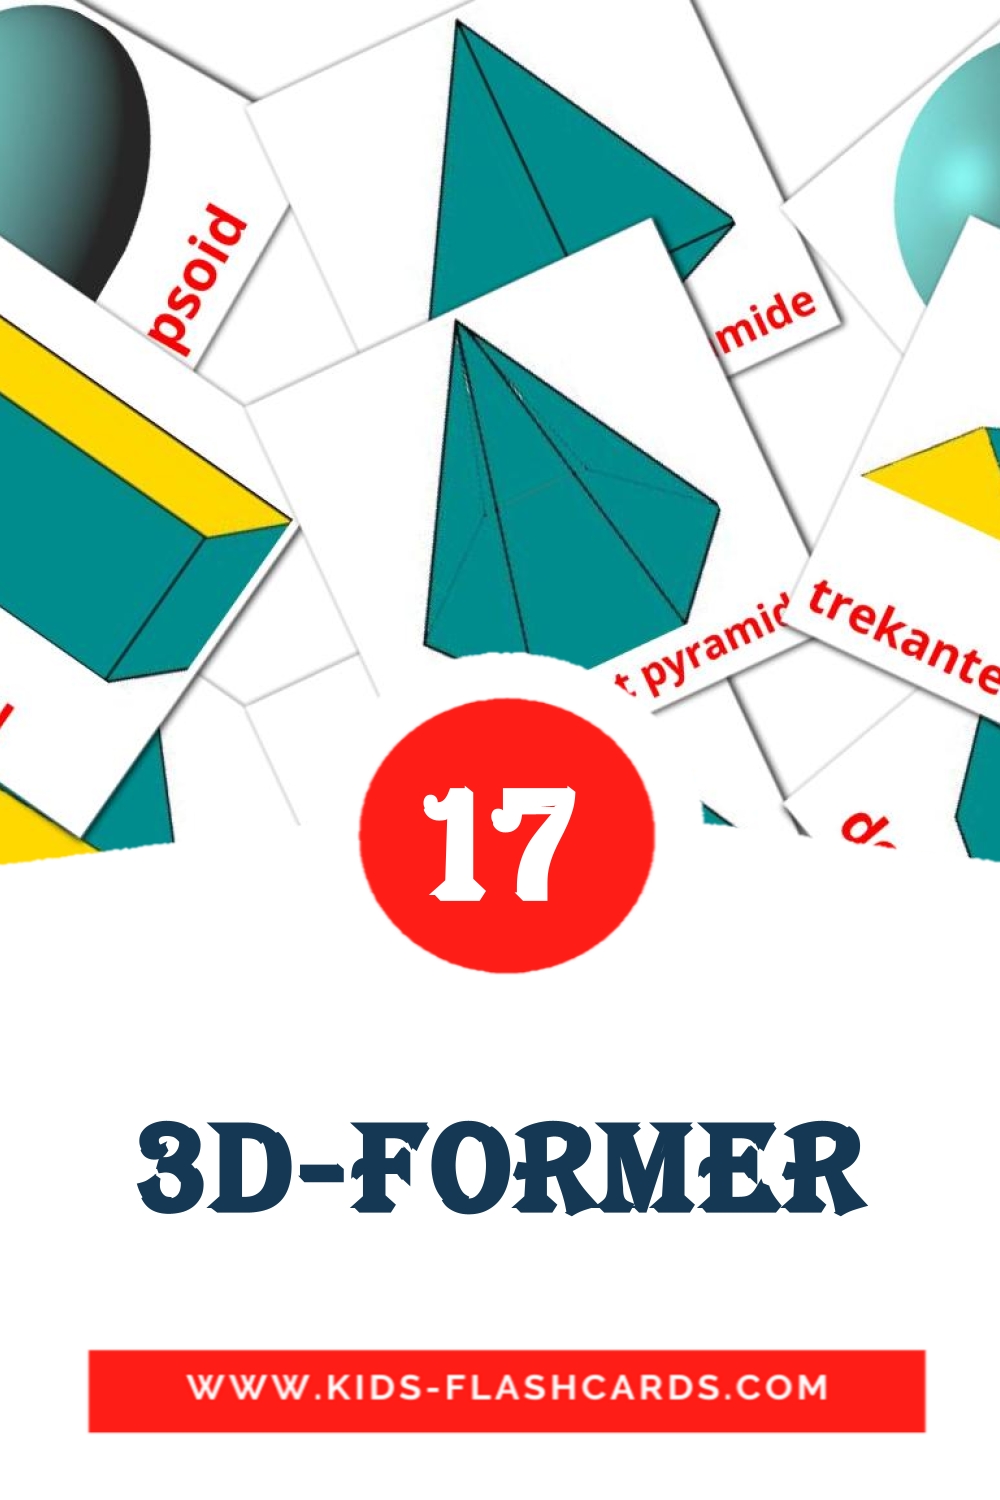 17 carte illustrate di 3D-former per la scuola materna in norvegese